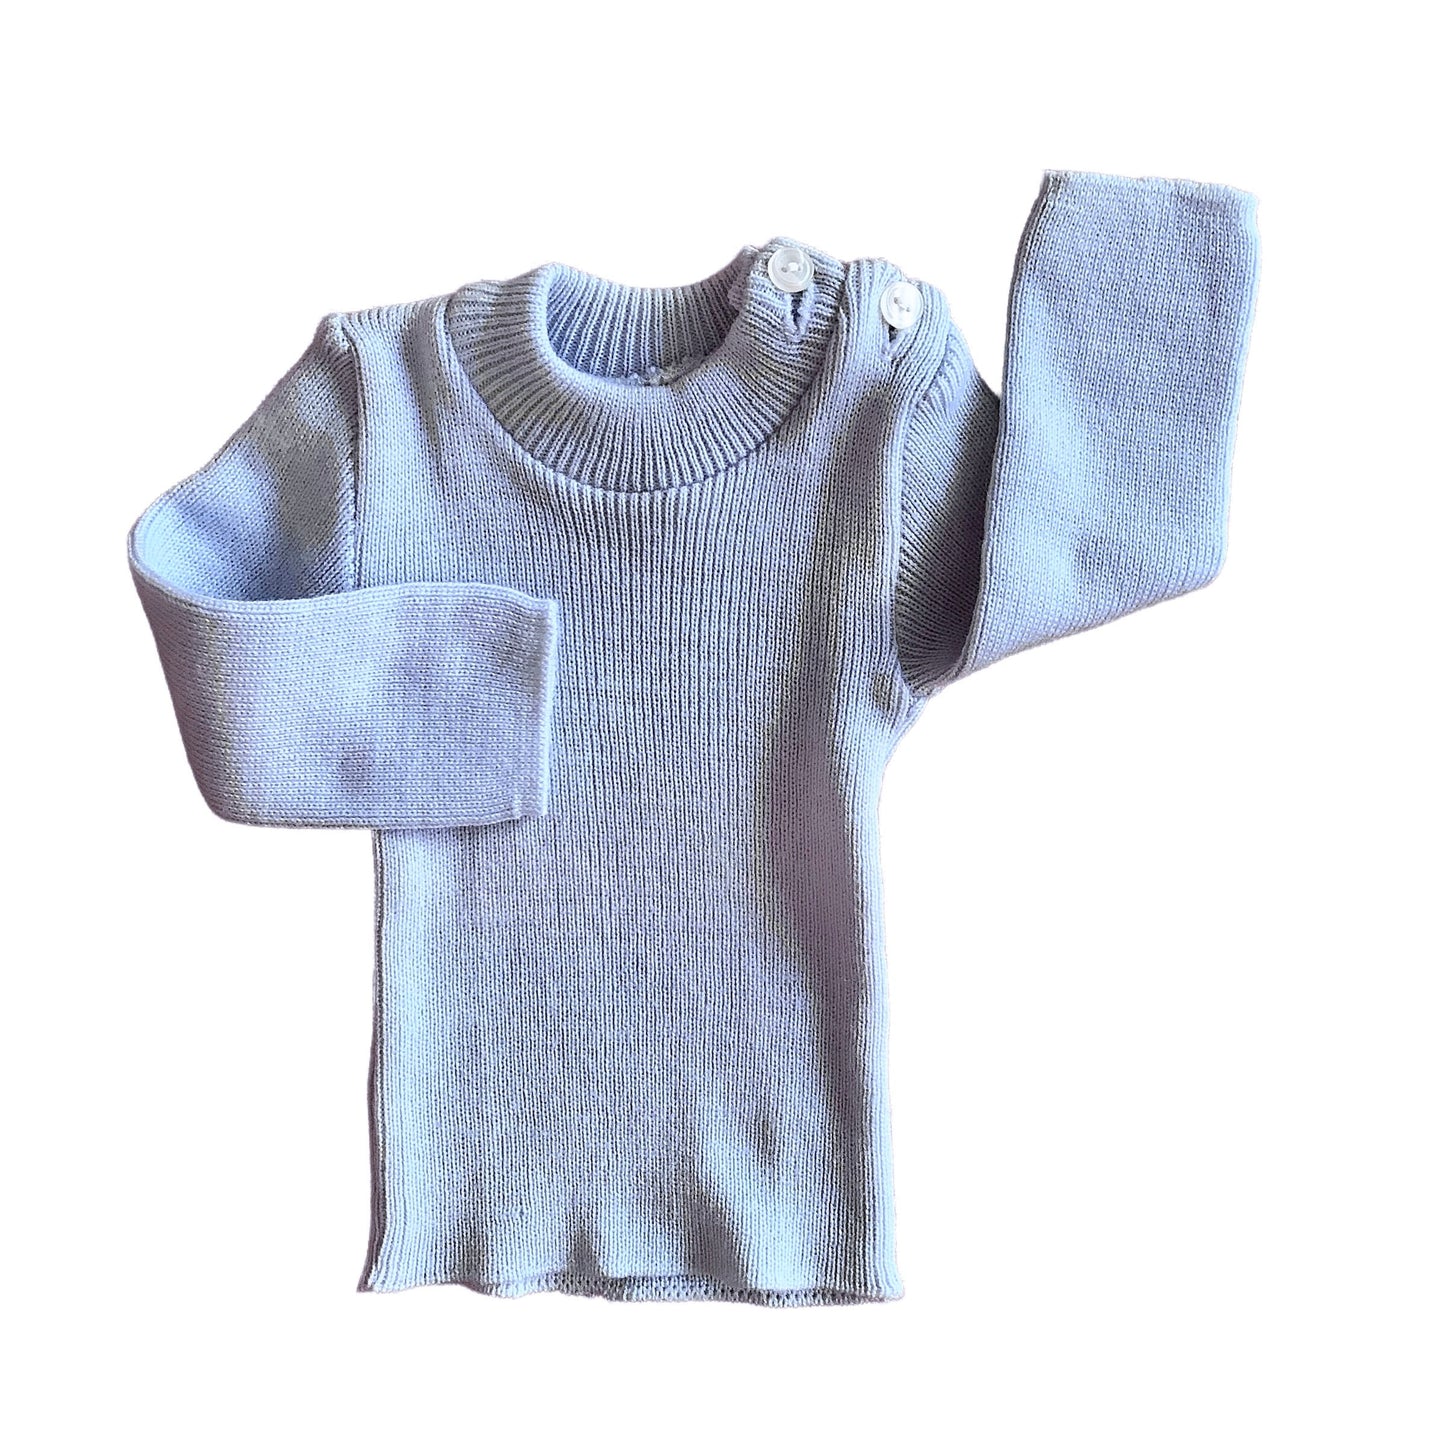 Vintage 70's Blue Knitted Jumper Newborn / 0-3 Months